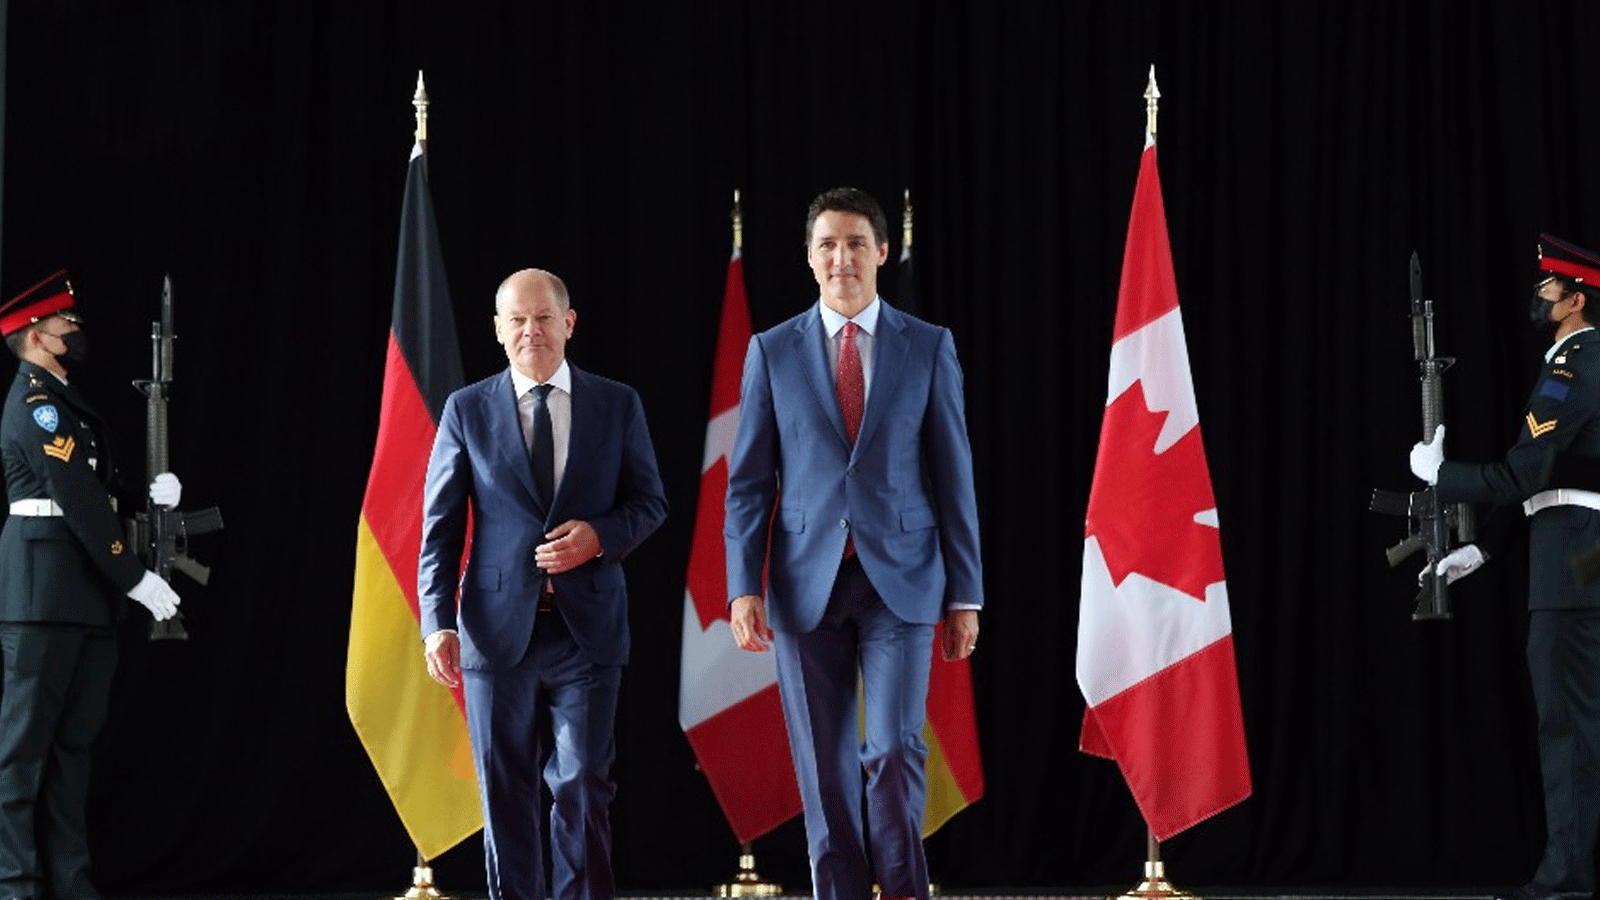 رئيس الوزراء الكندي جاستن ترودو يتوجه الى المؤتمر الصحافي الذي عقده مع المستشار الألماني أولاف شولتس في مونتريال